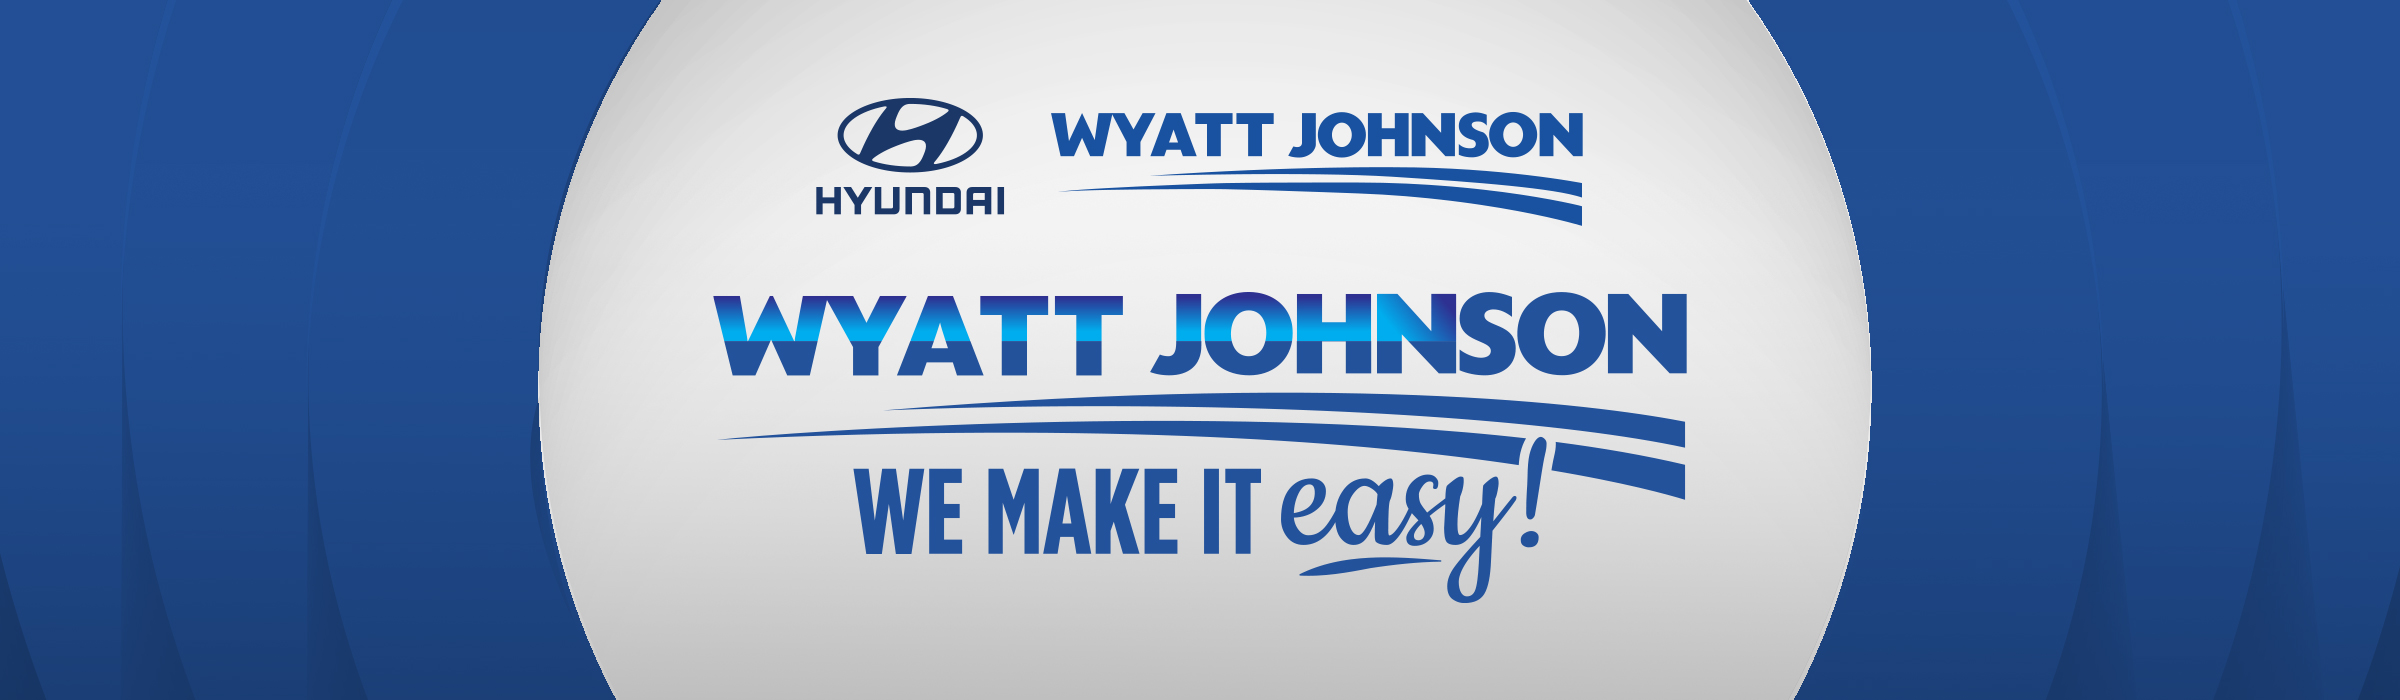 Wyatt Johnson Hyundai We Make It Easy! Logo